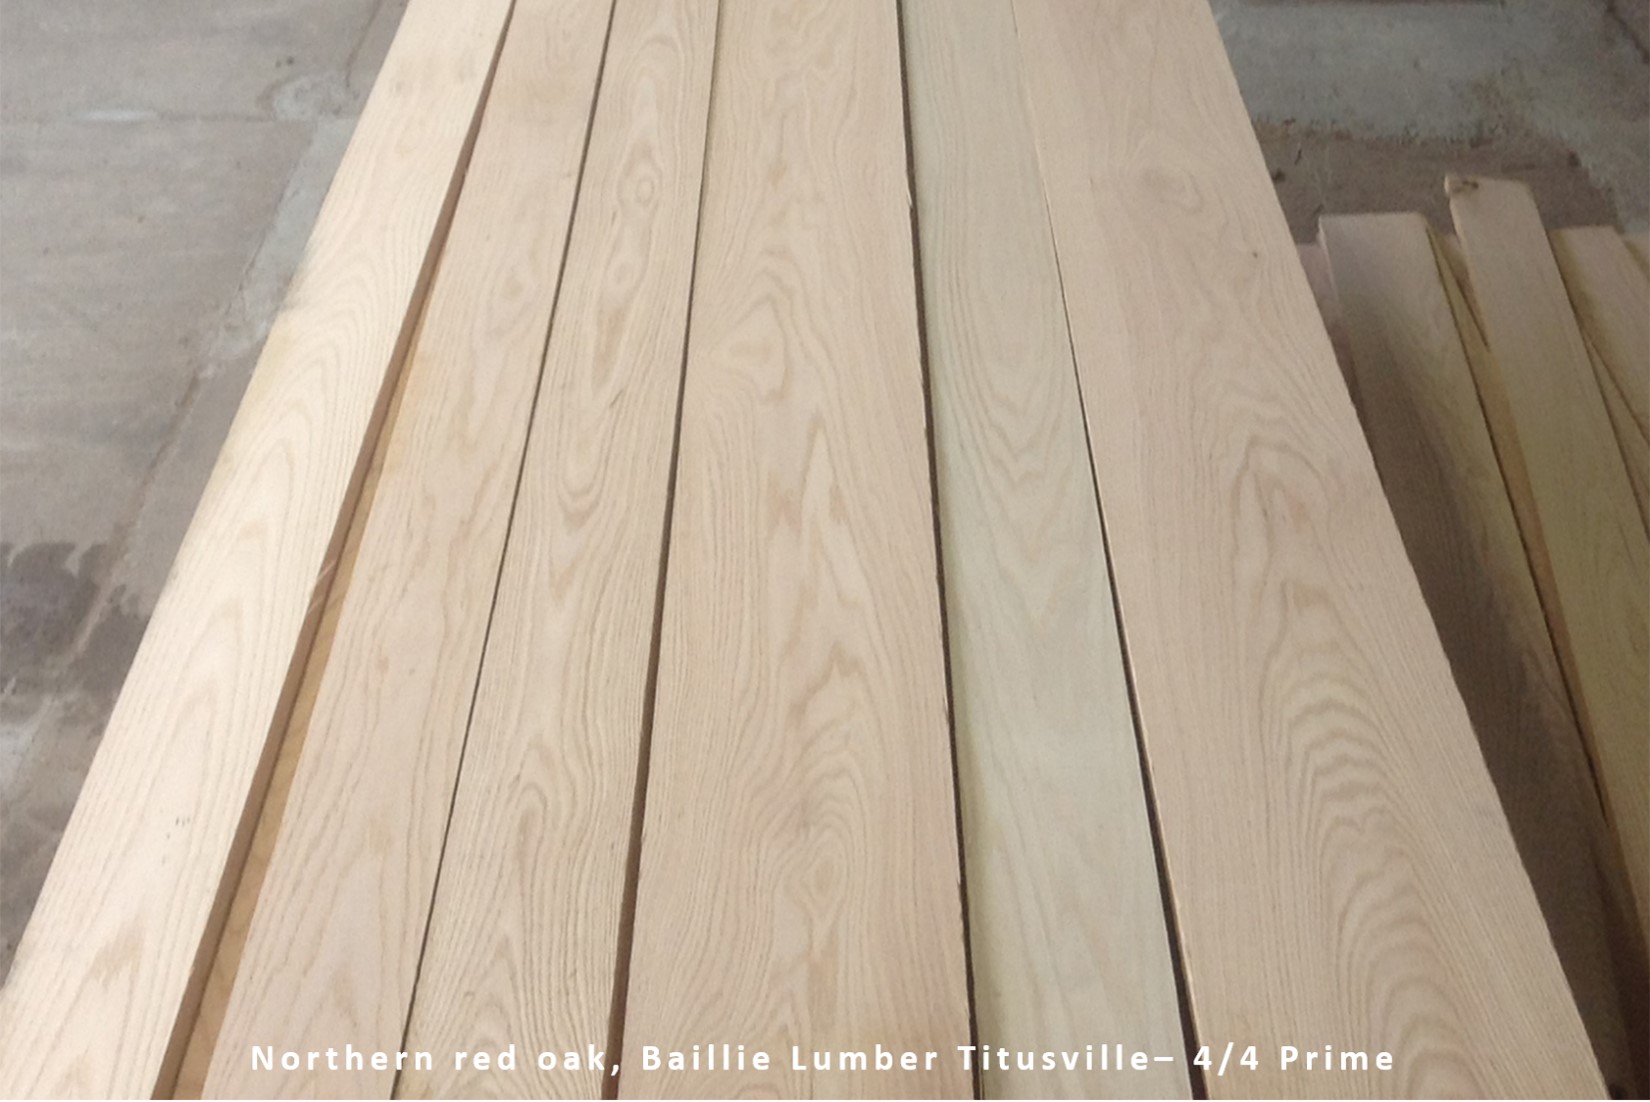 Red Oak Northern hardwood lumber